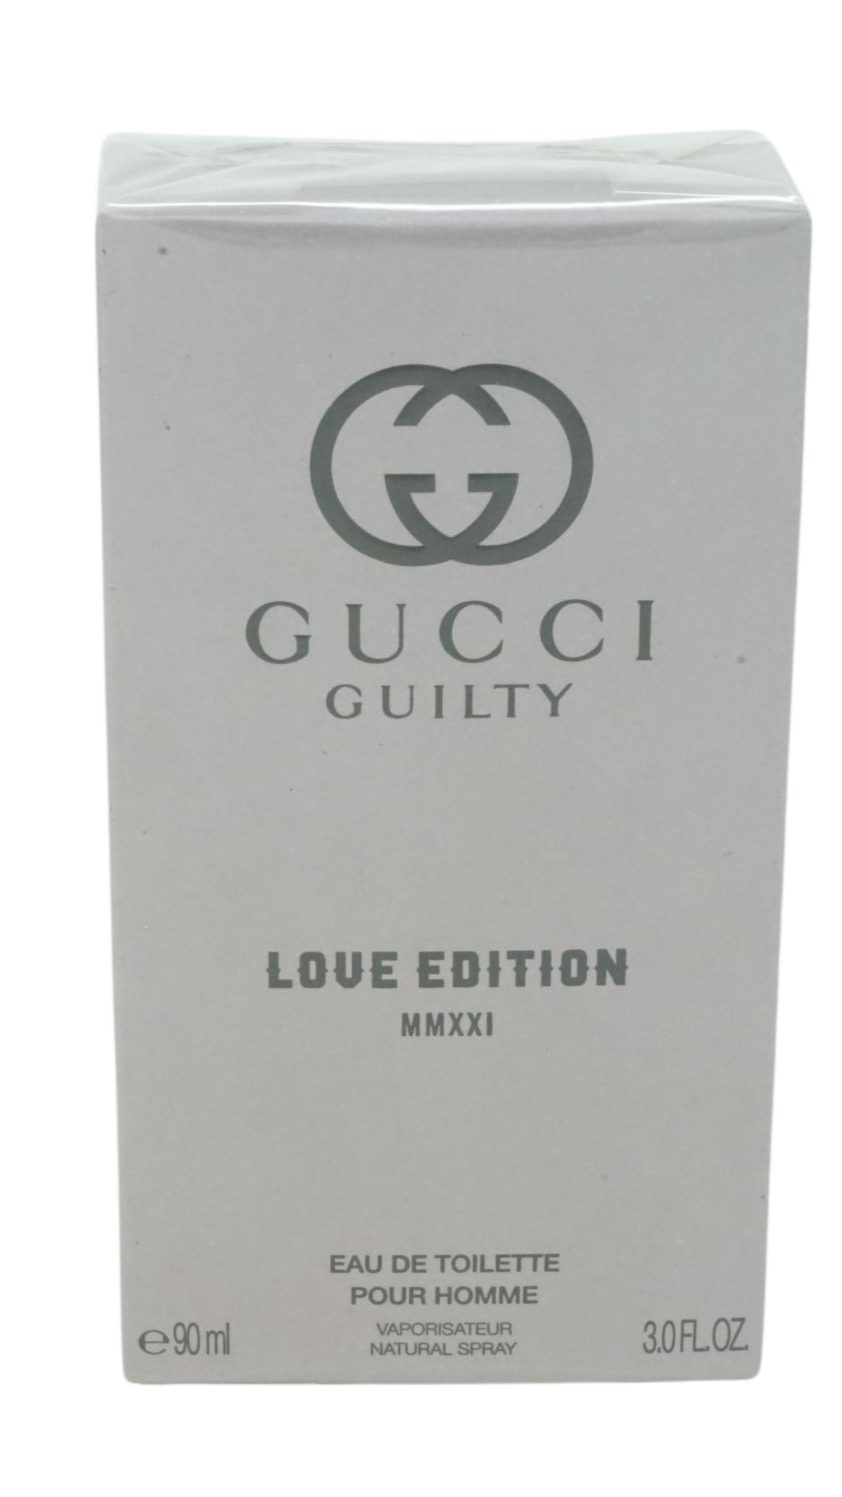 GUCCI Eau de Toilette Gucci Guilty Love Edition MMXXI Eau de Toilette 90ml